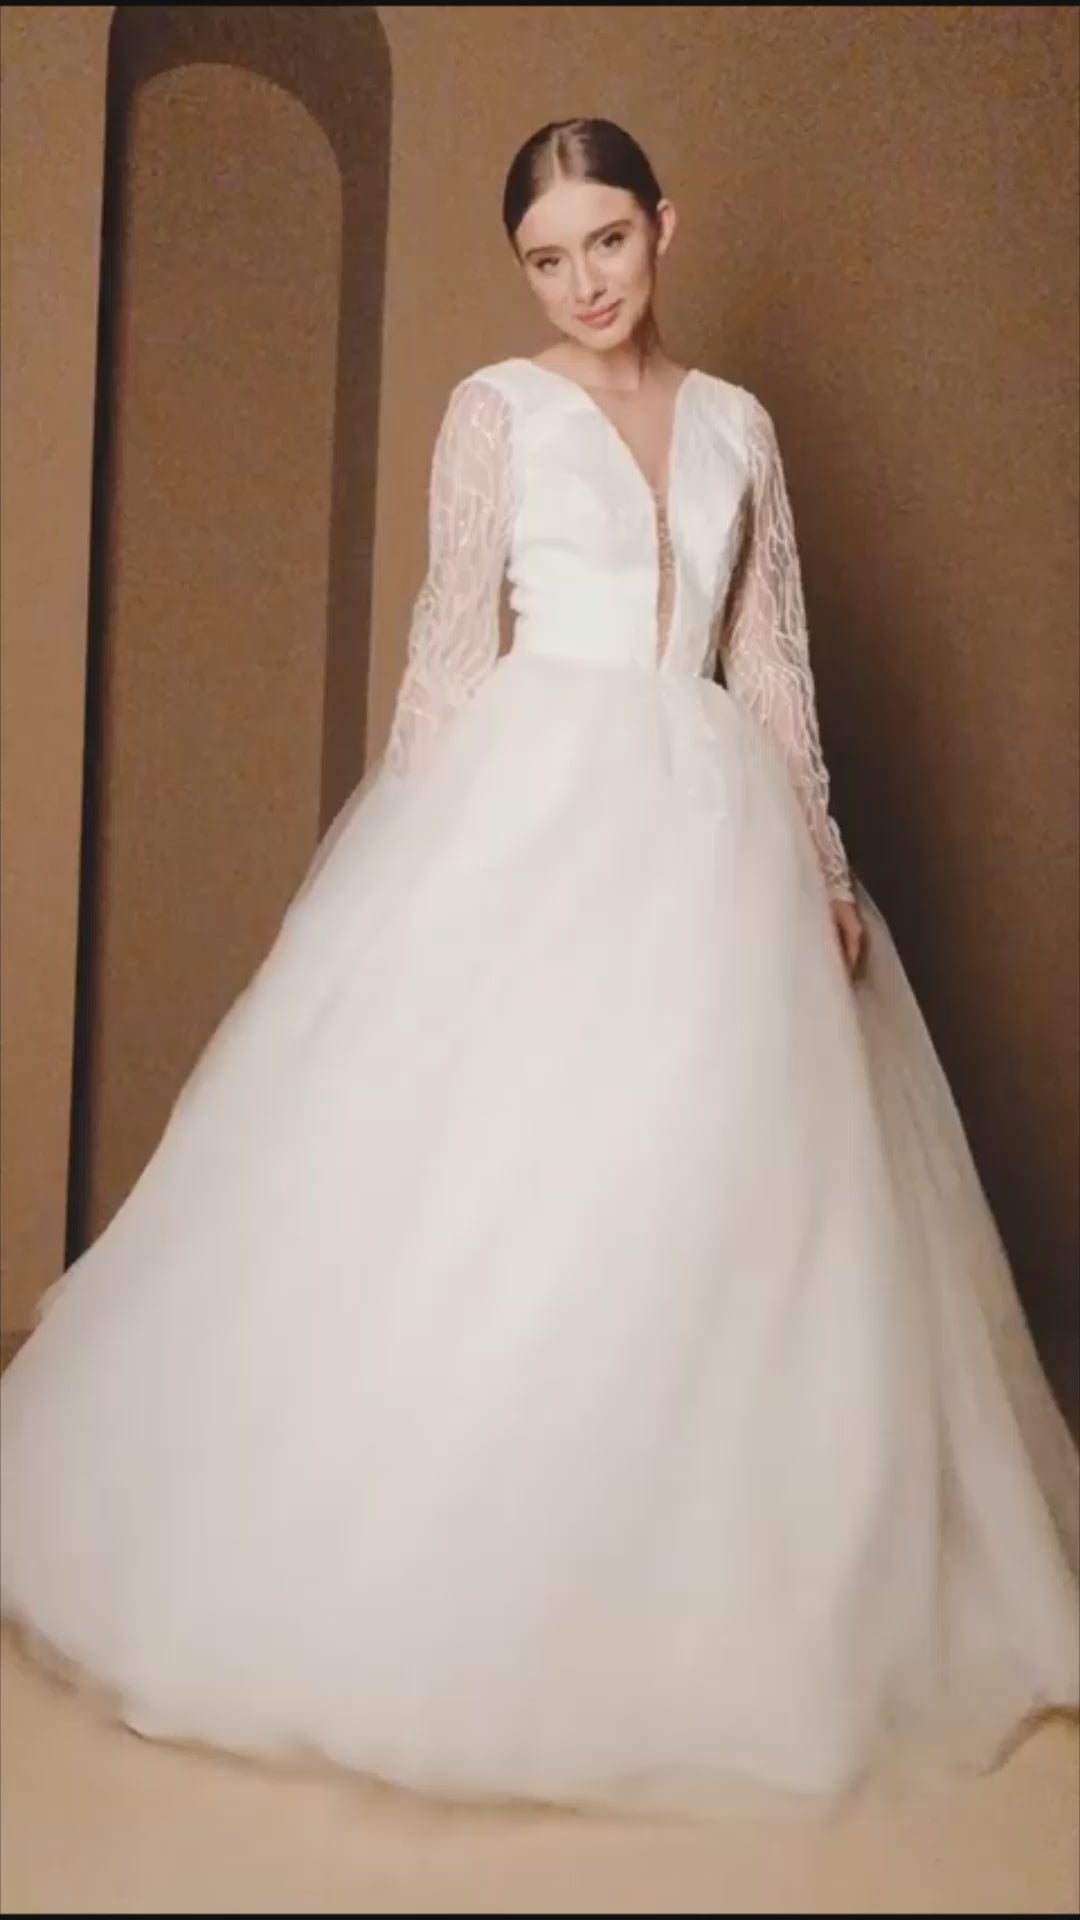 Wendie Princess/Ball Gown Illusion Milk Wedding dress